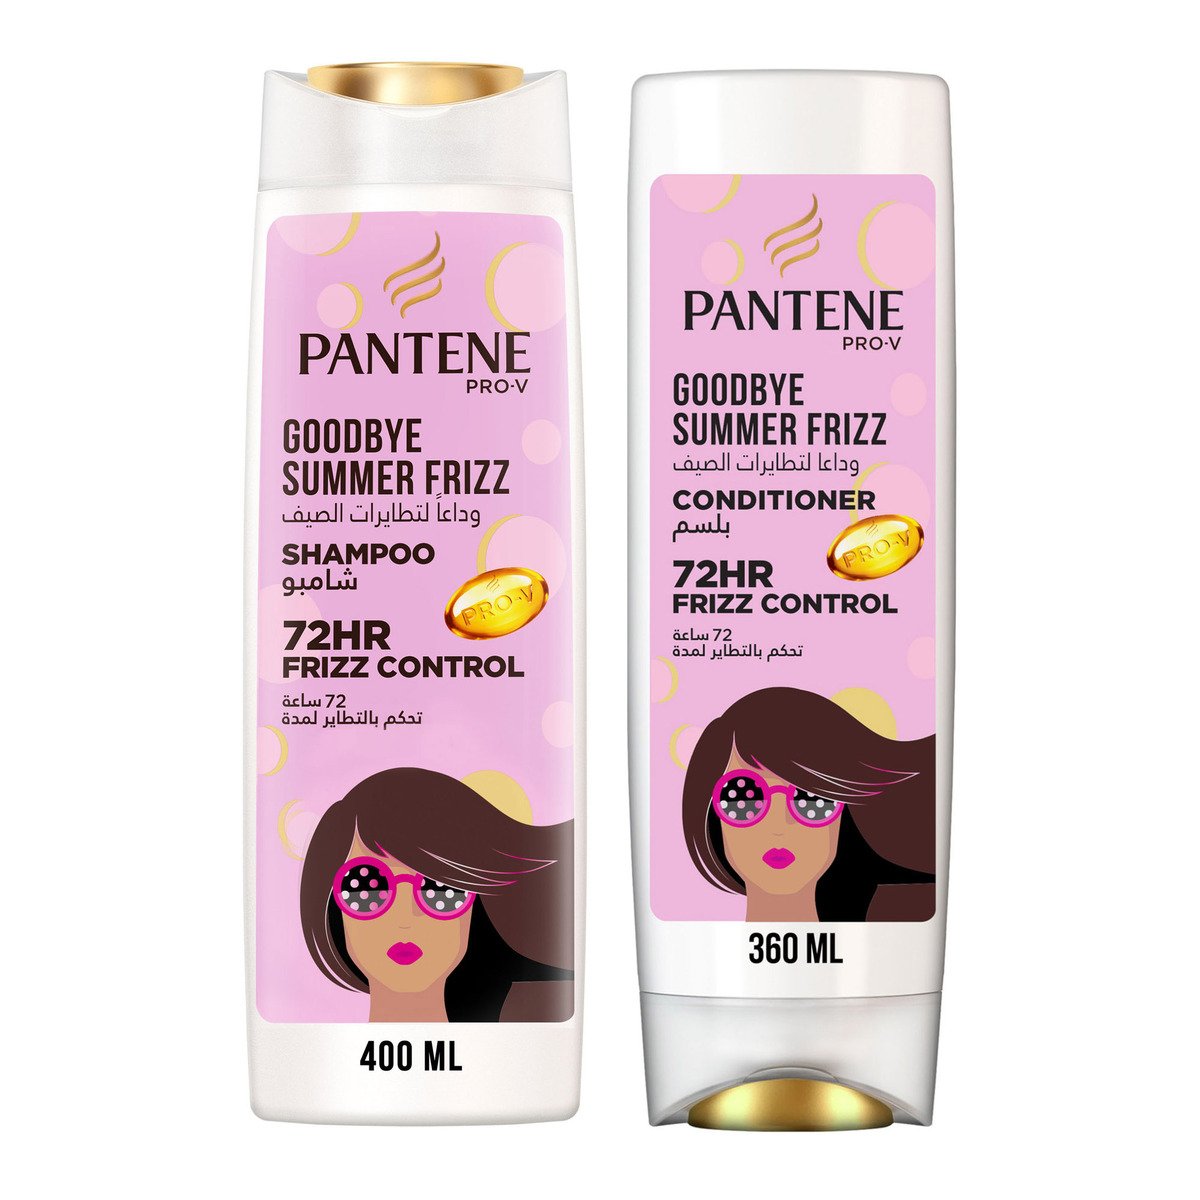 Pantene Pro-V Goodbye Summer Frizz Shampoo 400 ml + Conditioner 360 ml